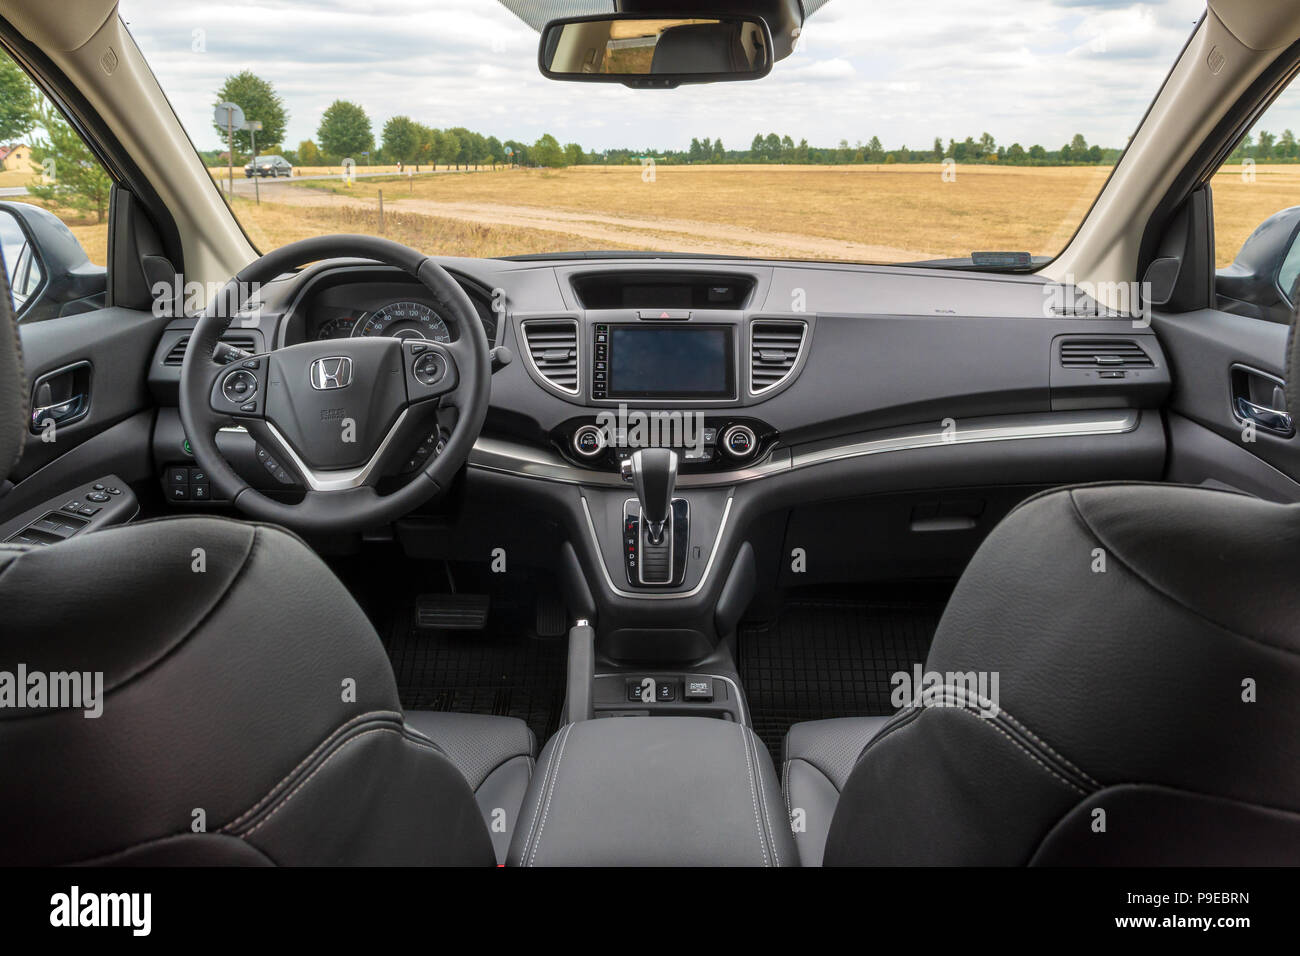 Poland July 8 2018 Details Of Honda Cr V Car Interior